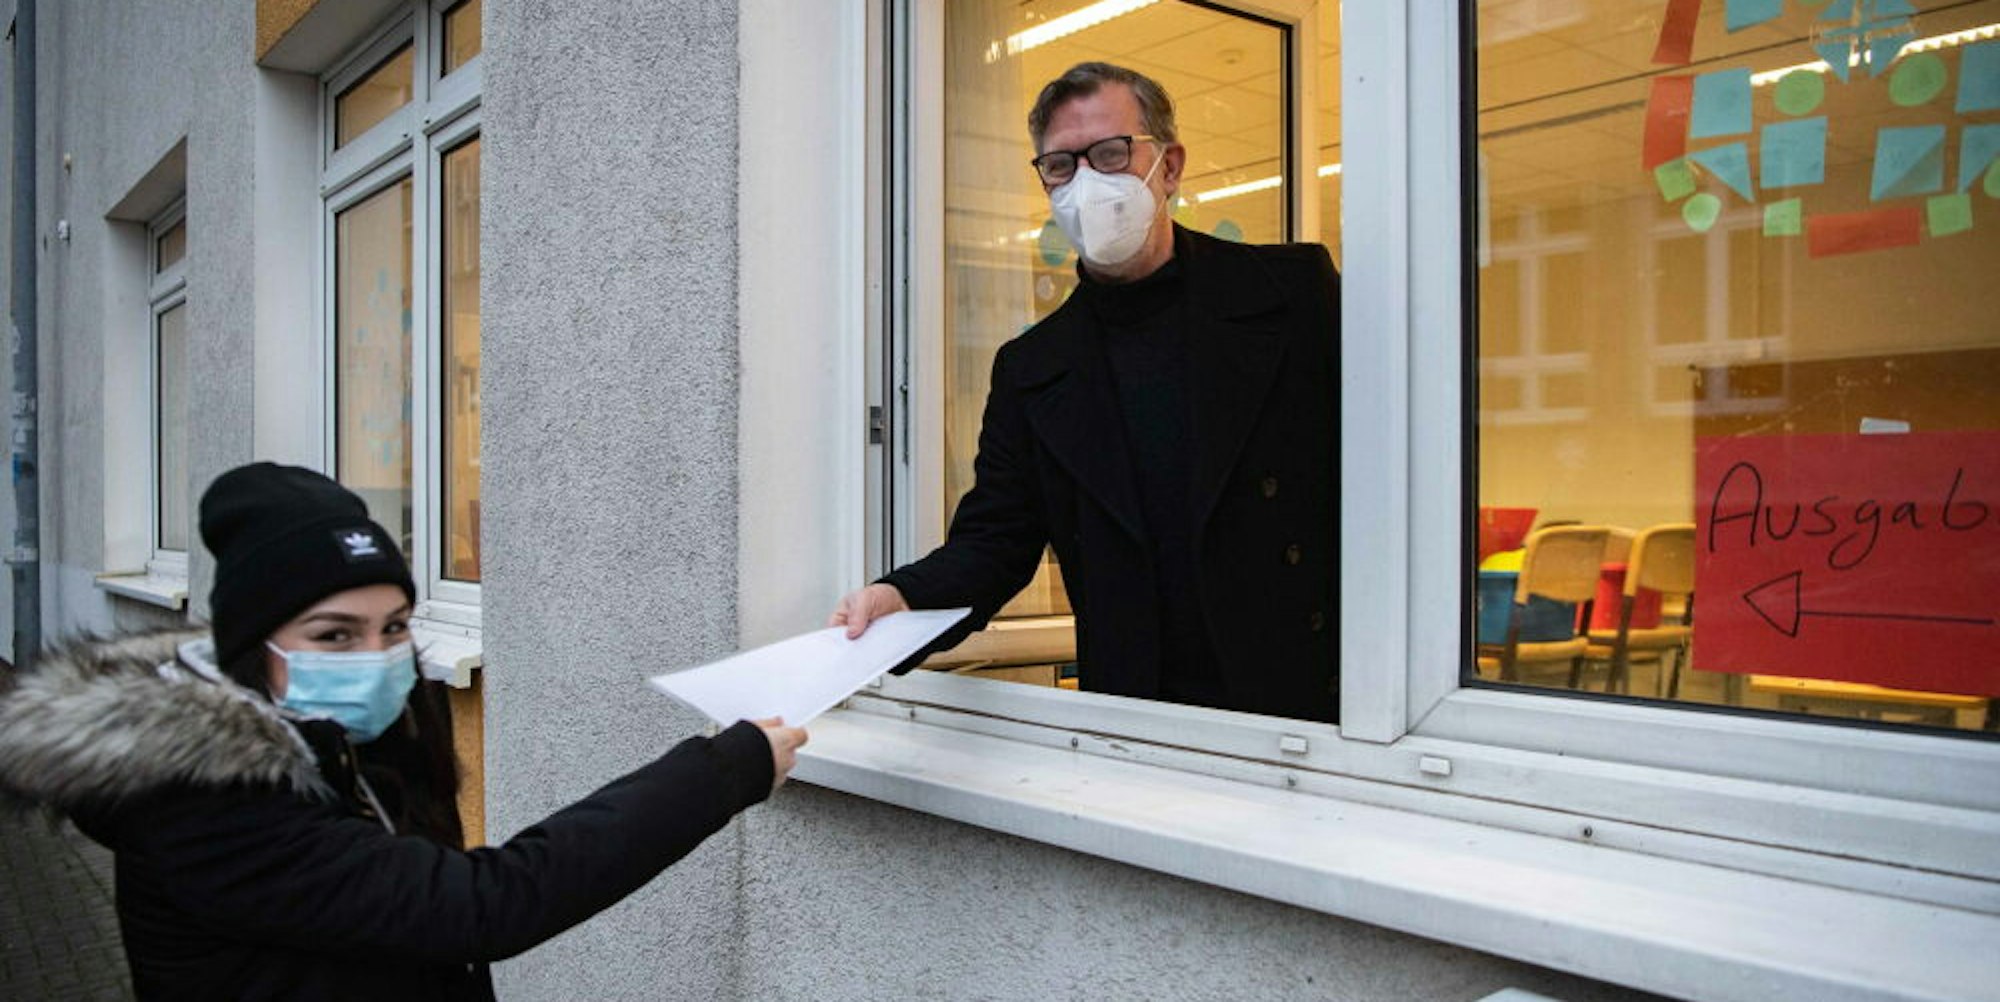 So ist es geplant: Euskirchens Gesamtschulleiter Thomas Müller überreicht einer Schülerin das Zeugnis durchs Fenster – mit Abstand und Mundschutz selbstverständlich.